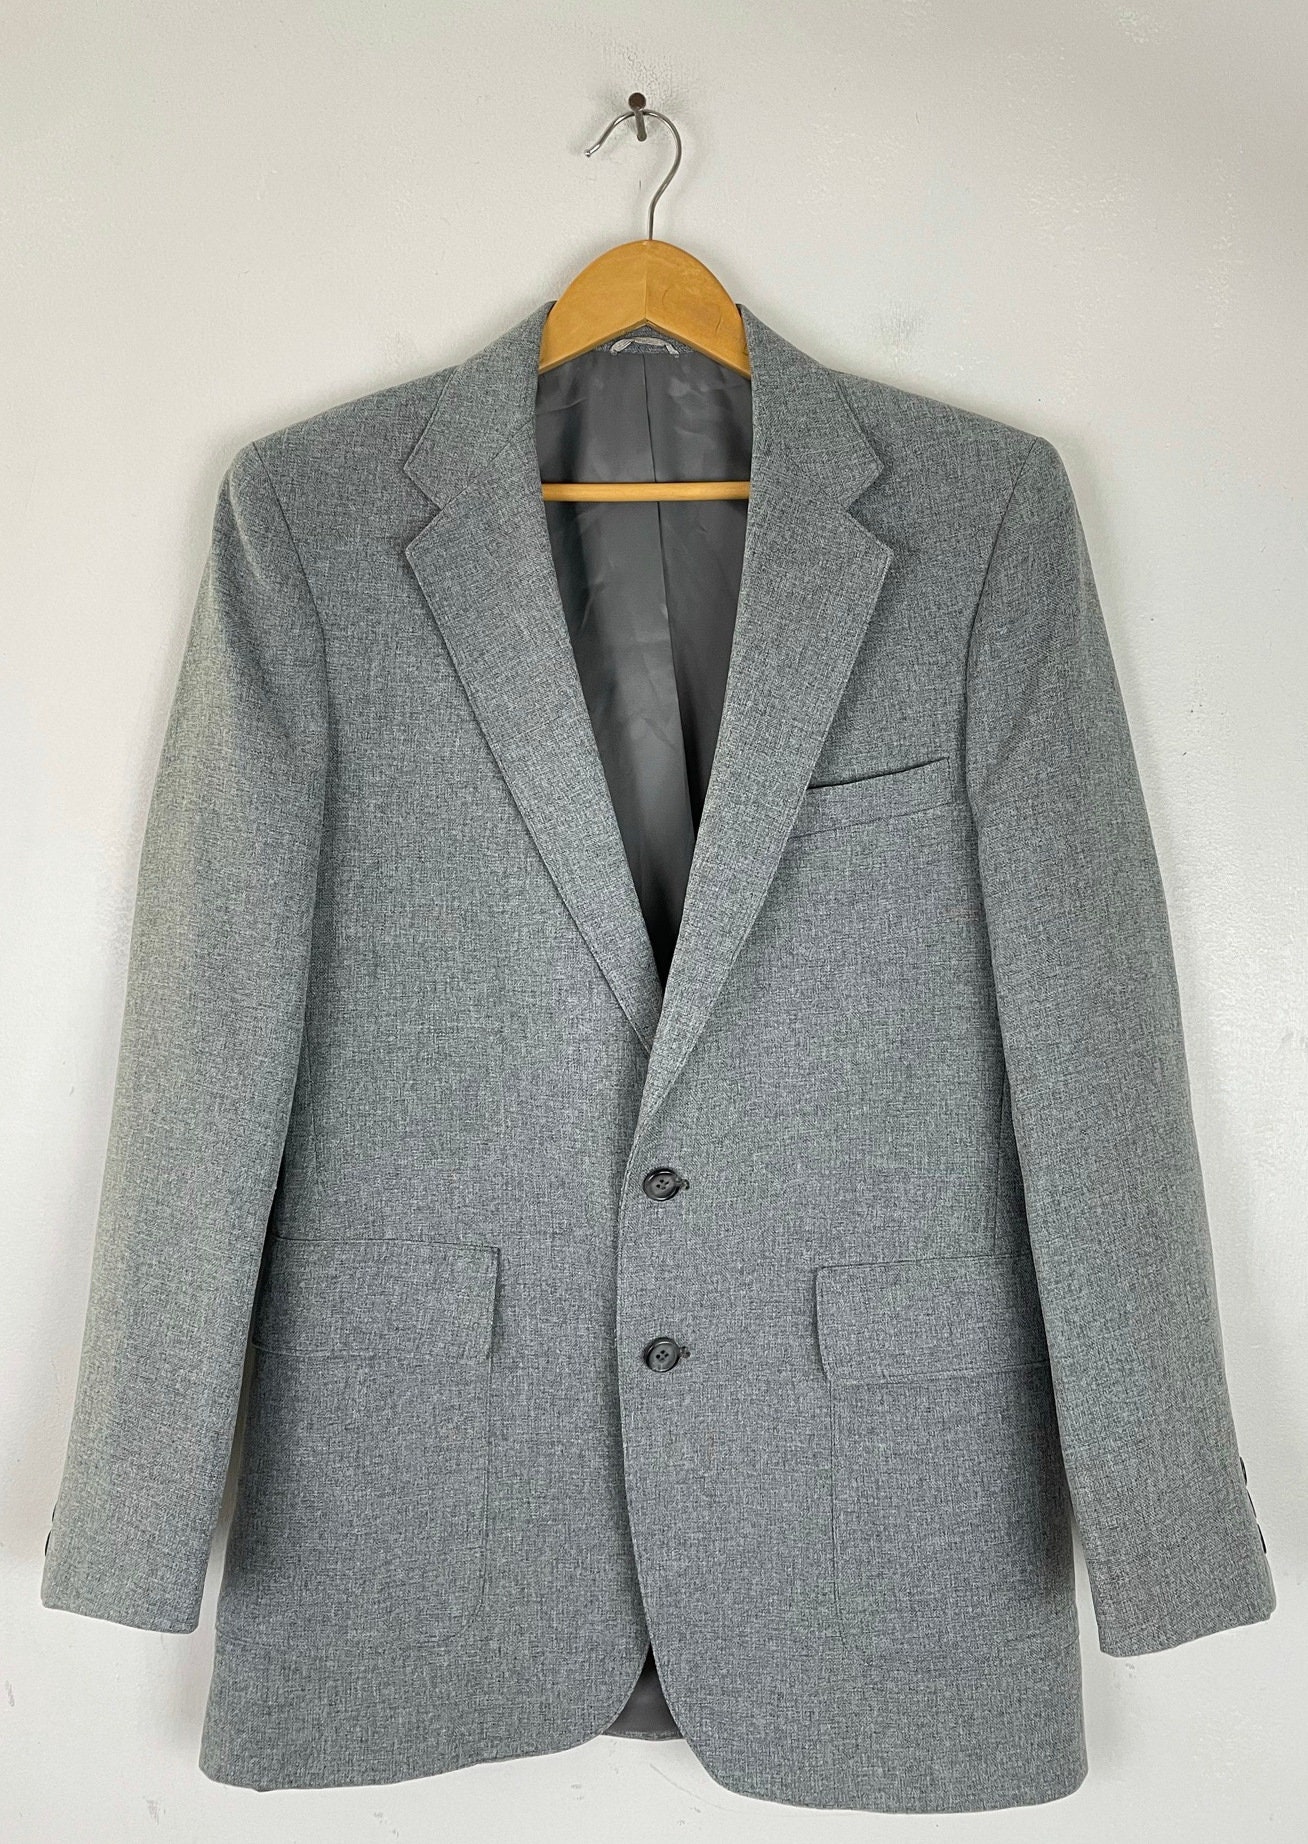 Vintage Levis Action Suit Gray Sport Coat Mens Size 38L 80s - Etsy